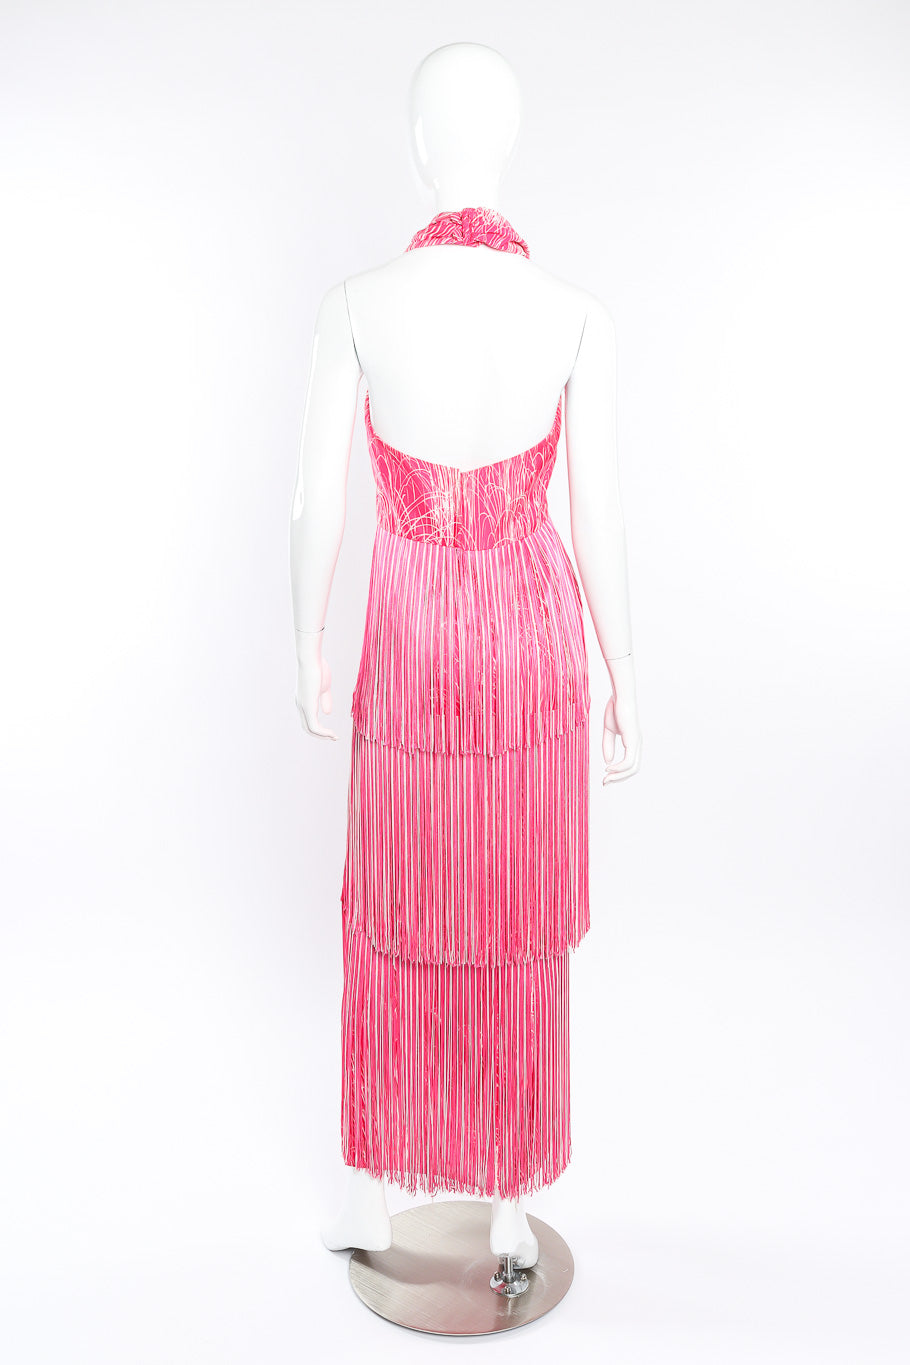 Vintage Lilli Diamond Halter Fringe Dress, Shawl & Belt Set back view of dress on mannequin @Recessla